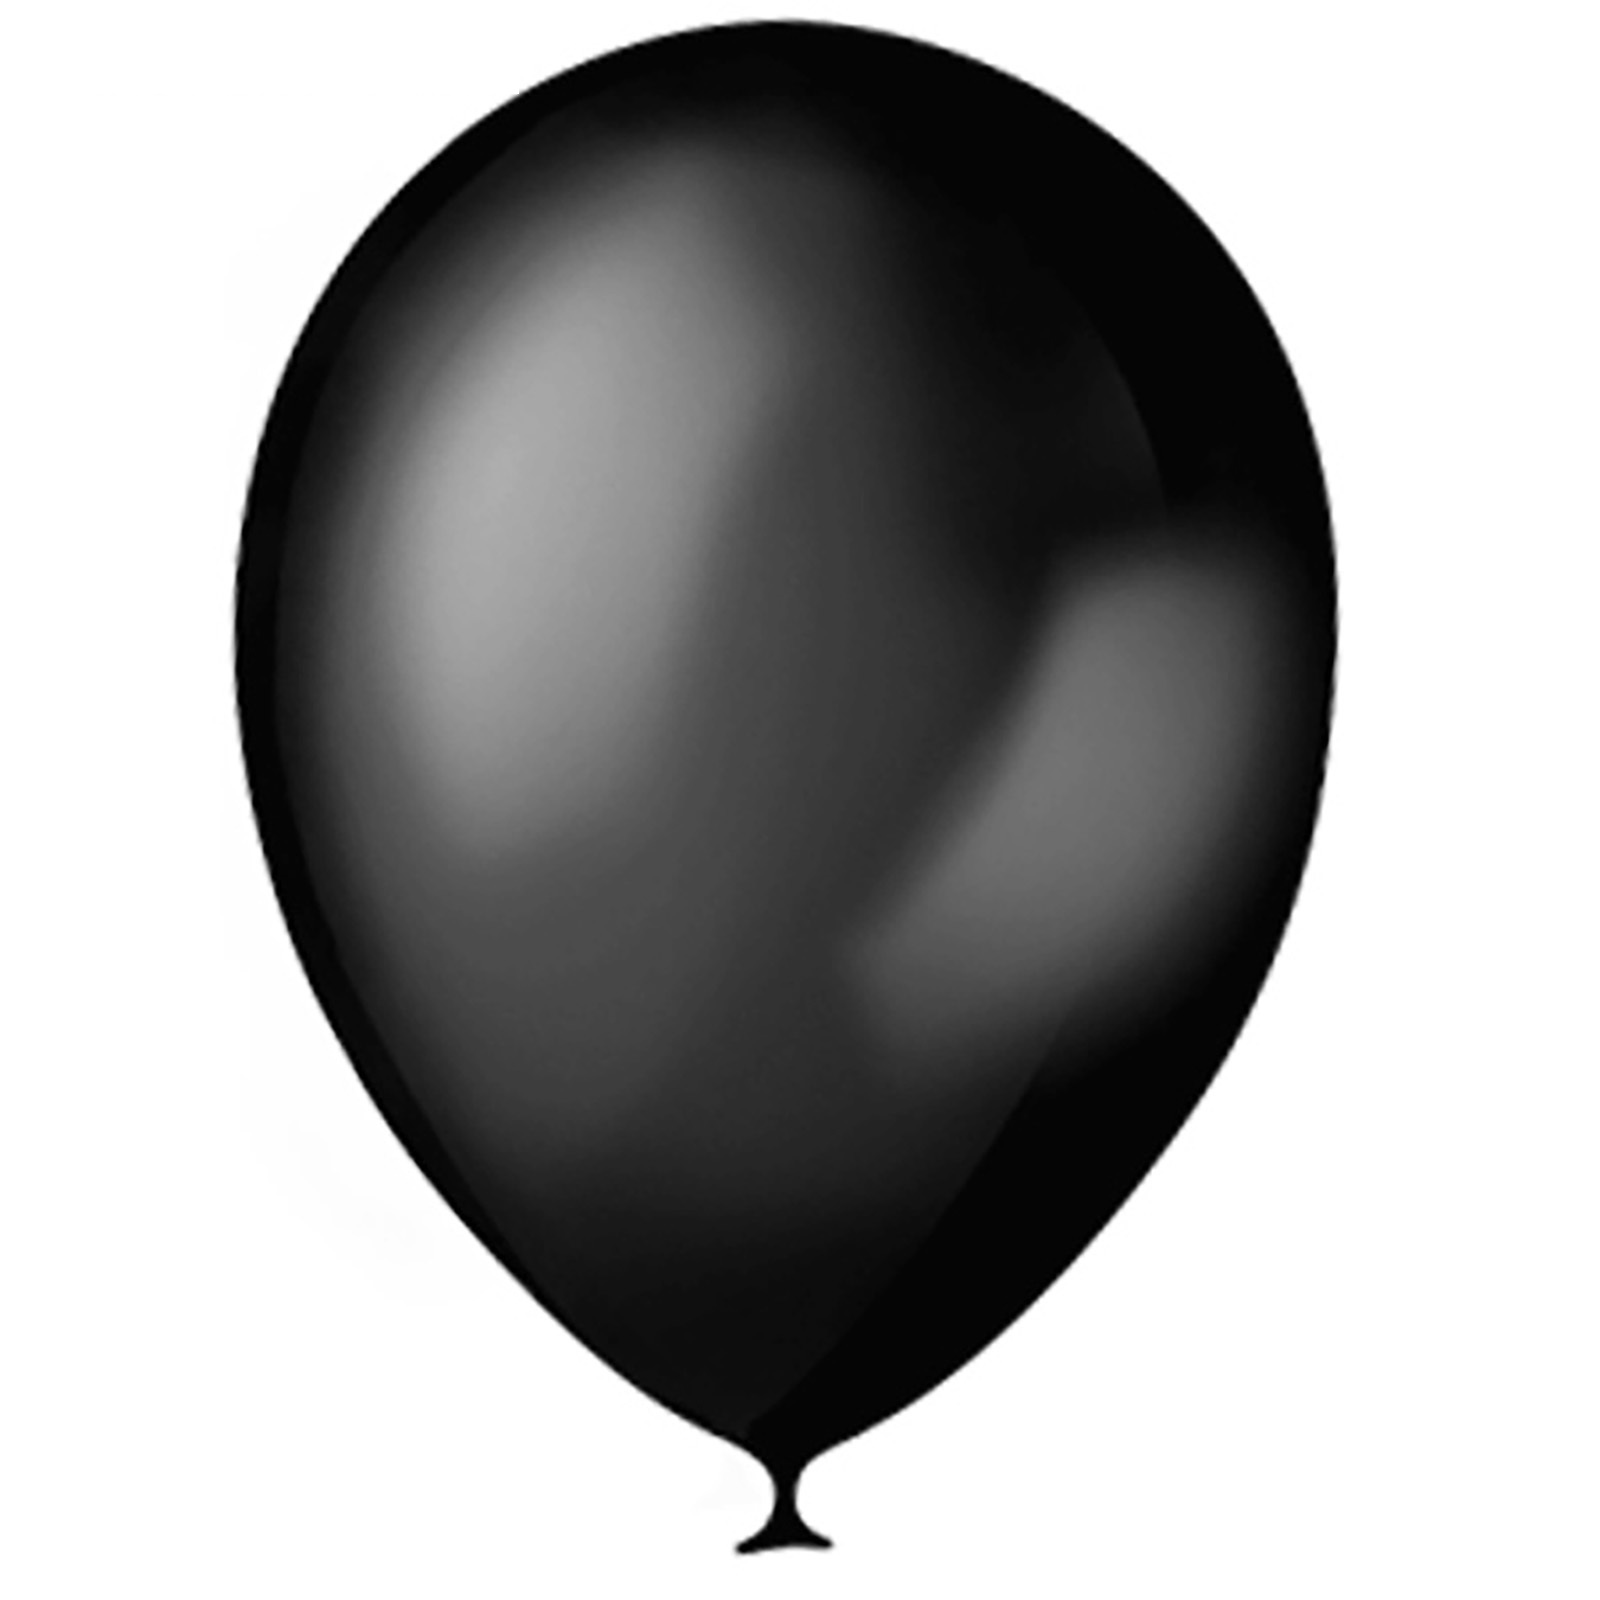 “Черный шар” (the Black Balloon), 2008. Латекс Оксидентал шары. Воздушный шарик. Черный воздушный шар. Про черного шарика